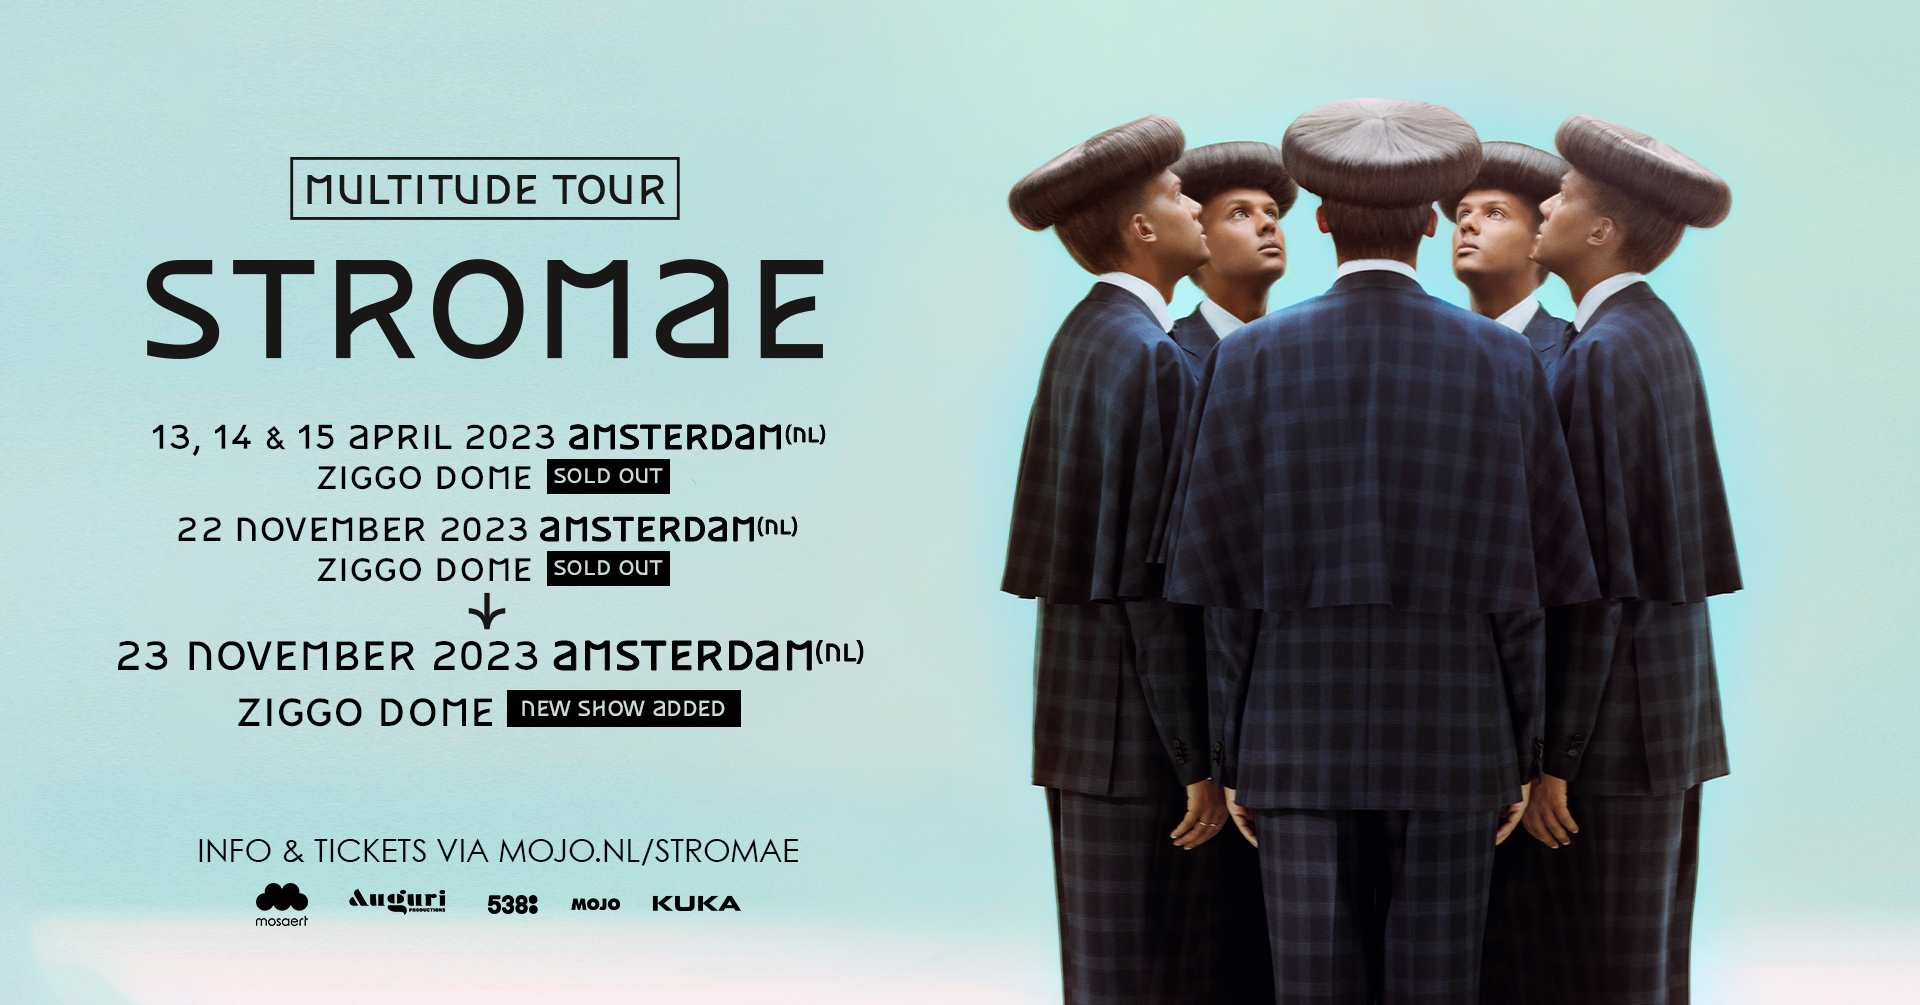 Markeer voor het geval dat Laboratorium Ticketmaster NL on Twitter: "🆕 Formidable! Wegens overweldigend succes  voegt @Stromae nóg een extra datum toe aan zijn Multitude Tour in Amsterdam.  Op 23 november 2023 komt hij met een vijfde show